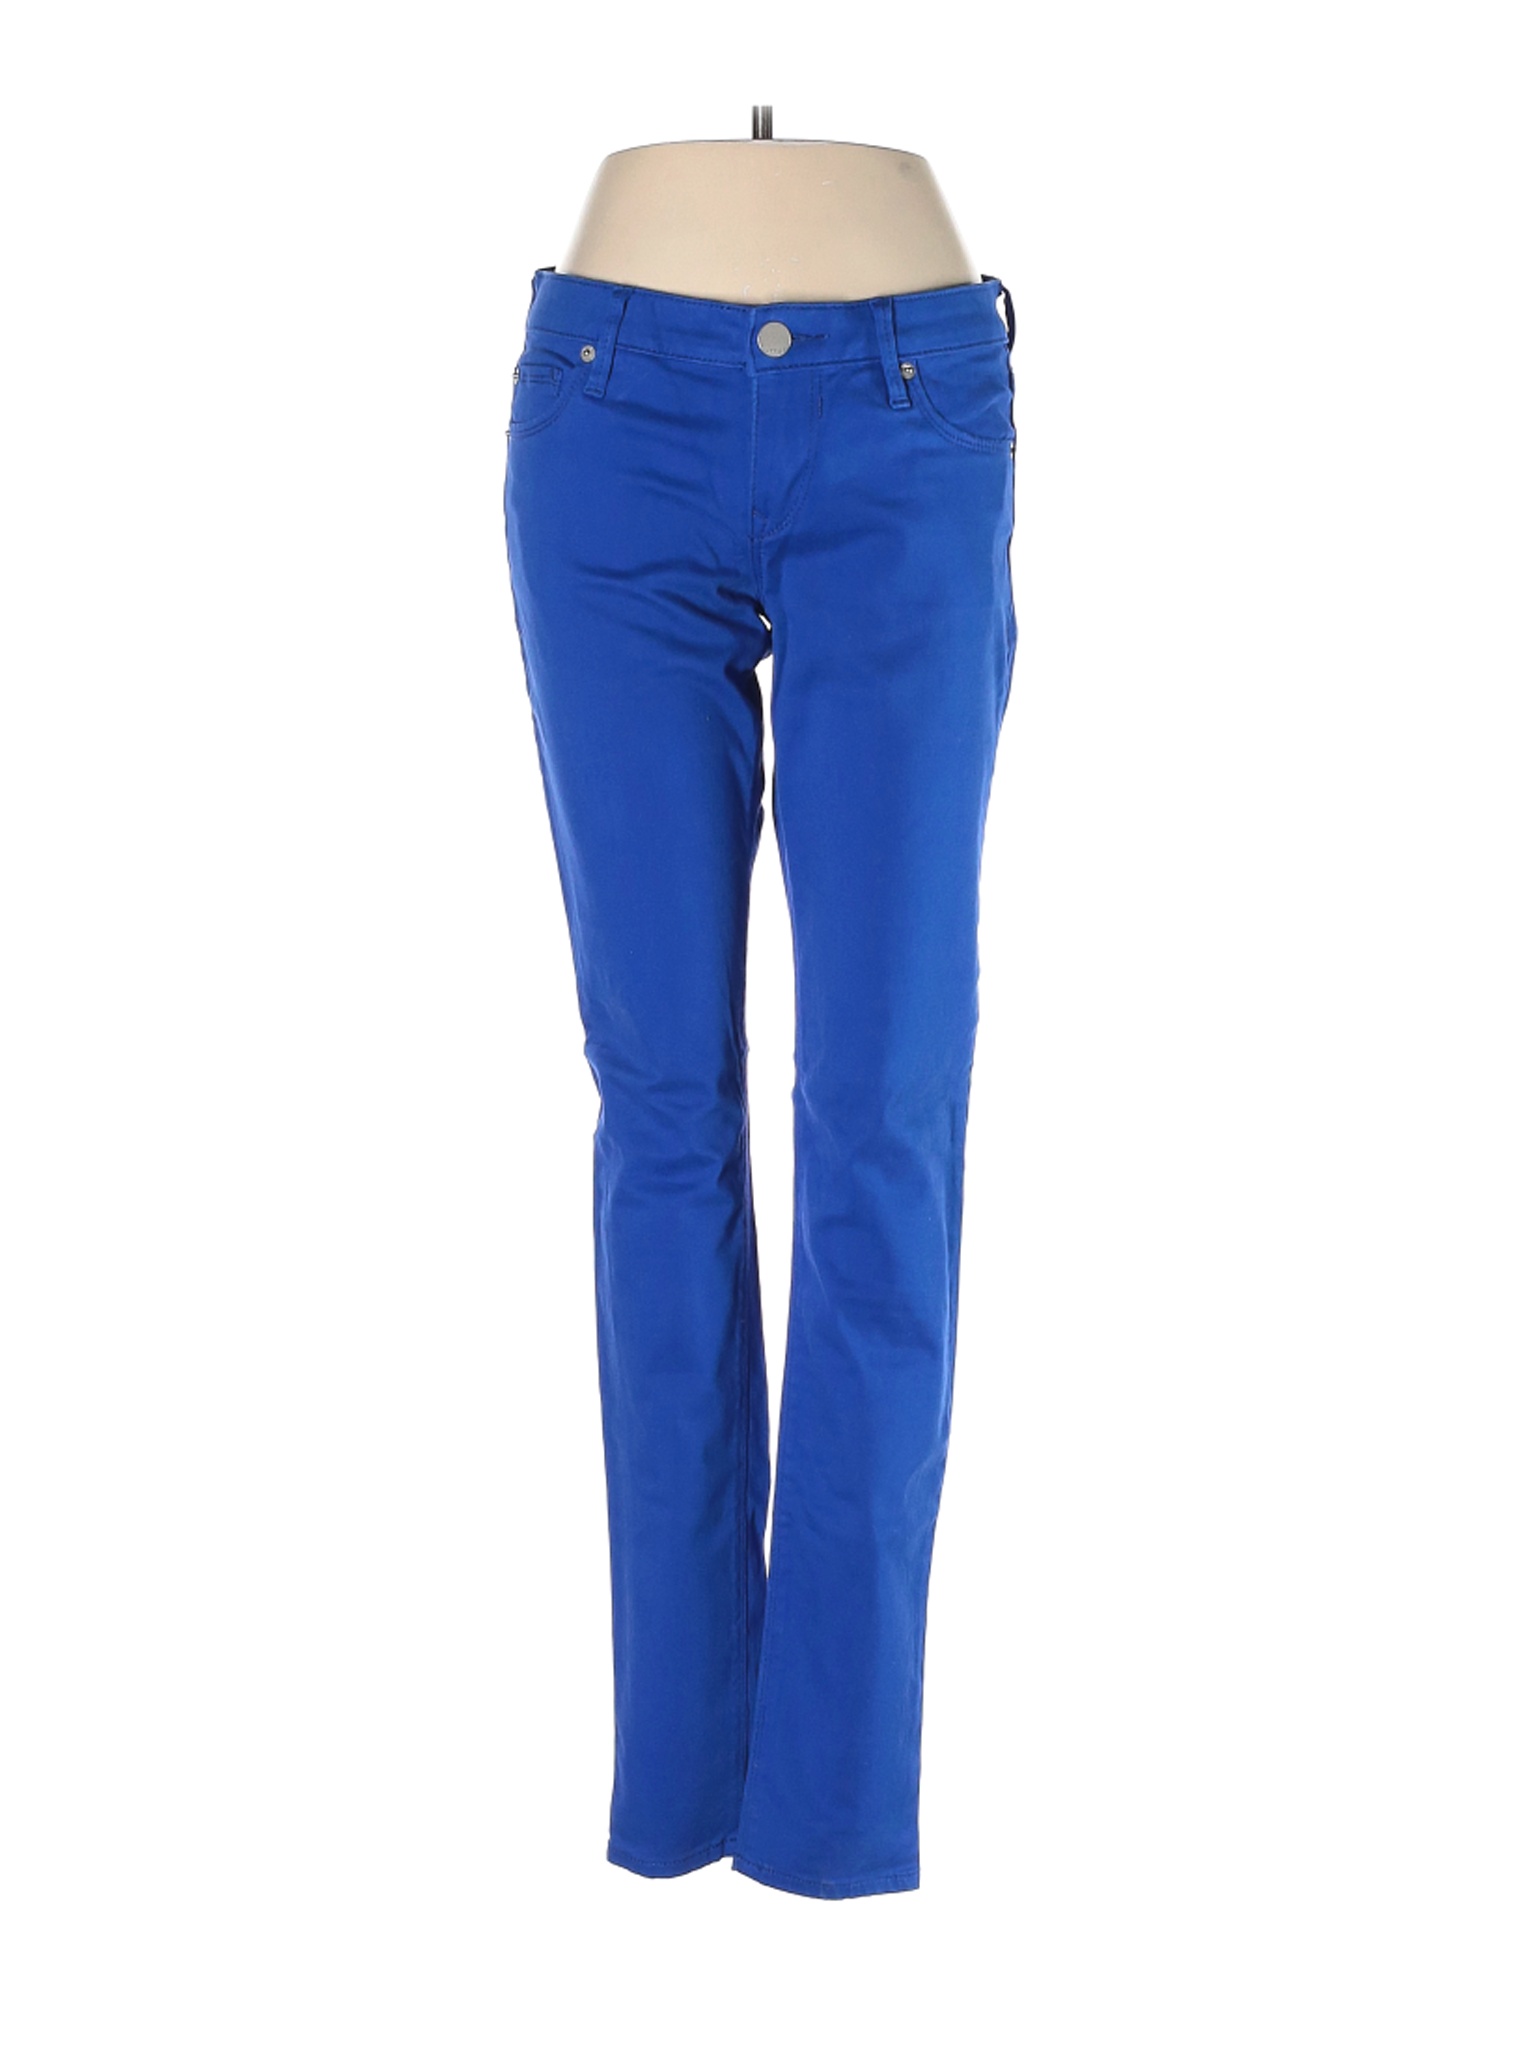 Express Women Blue Jeans 4 | eBay